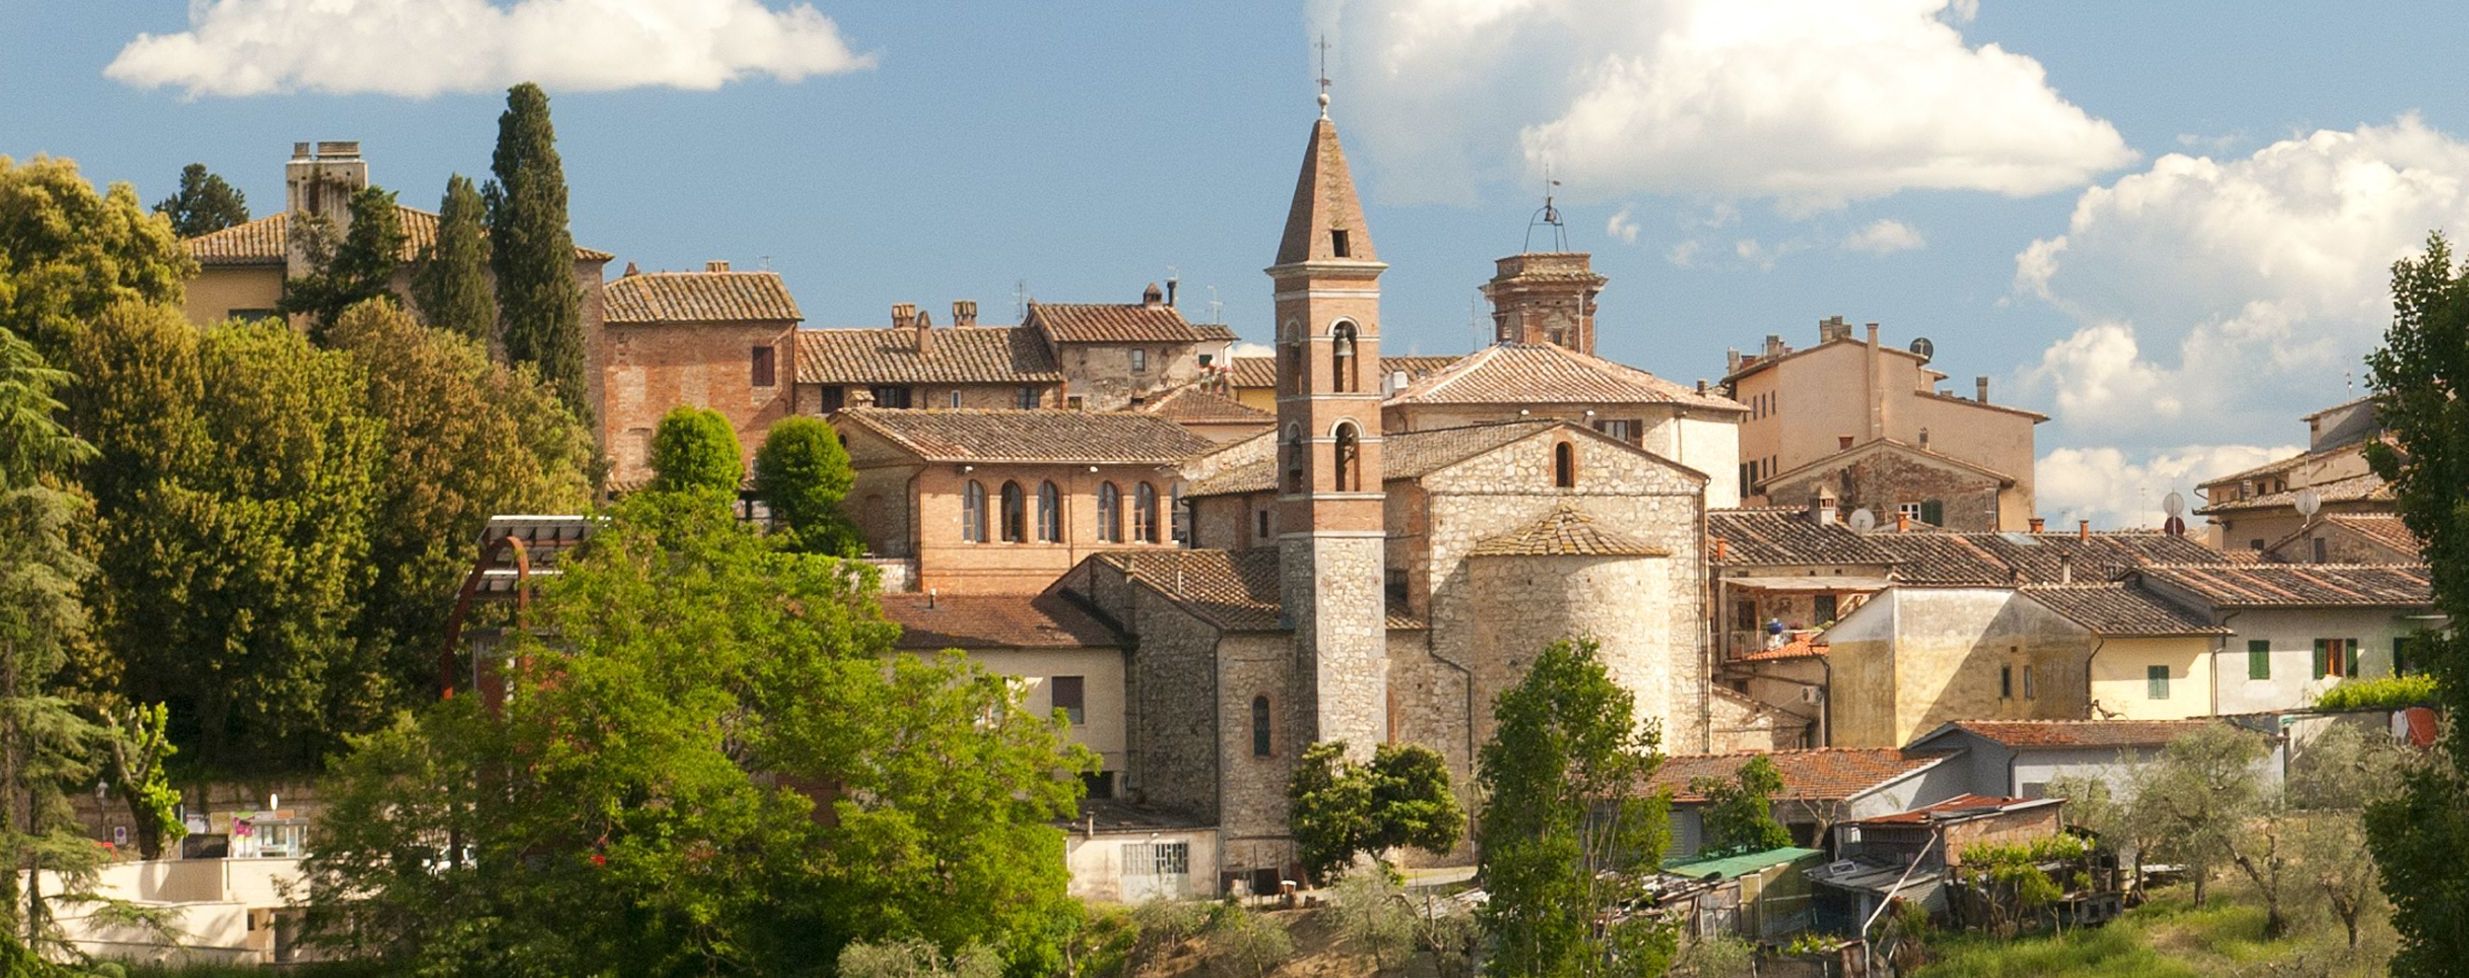 5-звездочный монастырь в Италии. В храме можно снять номер, посетить SPA, сауну, спортзал и ресторан